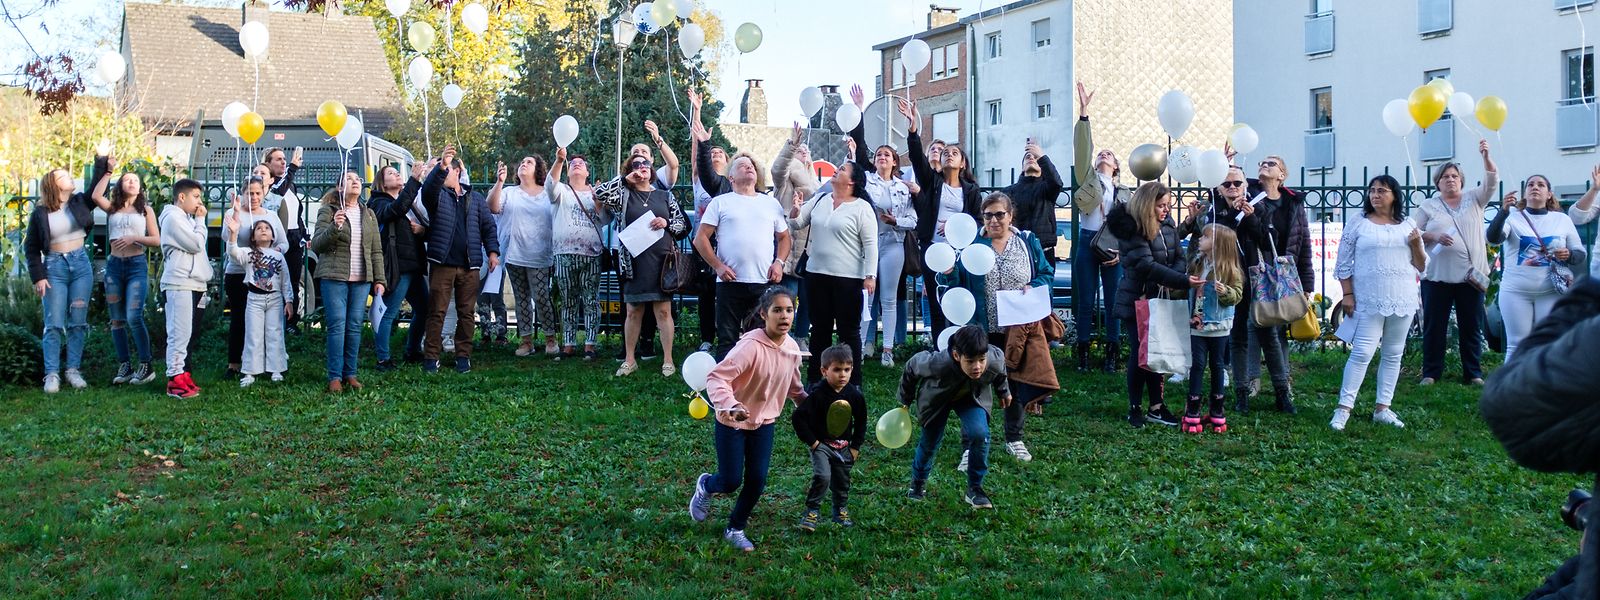 Des dizaines de personnes se sont rassemblées dans un parc à Athus, en Belgique, et ont lâché des ballons en hommage à Diana Santos.